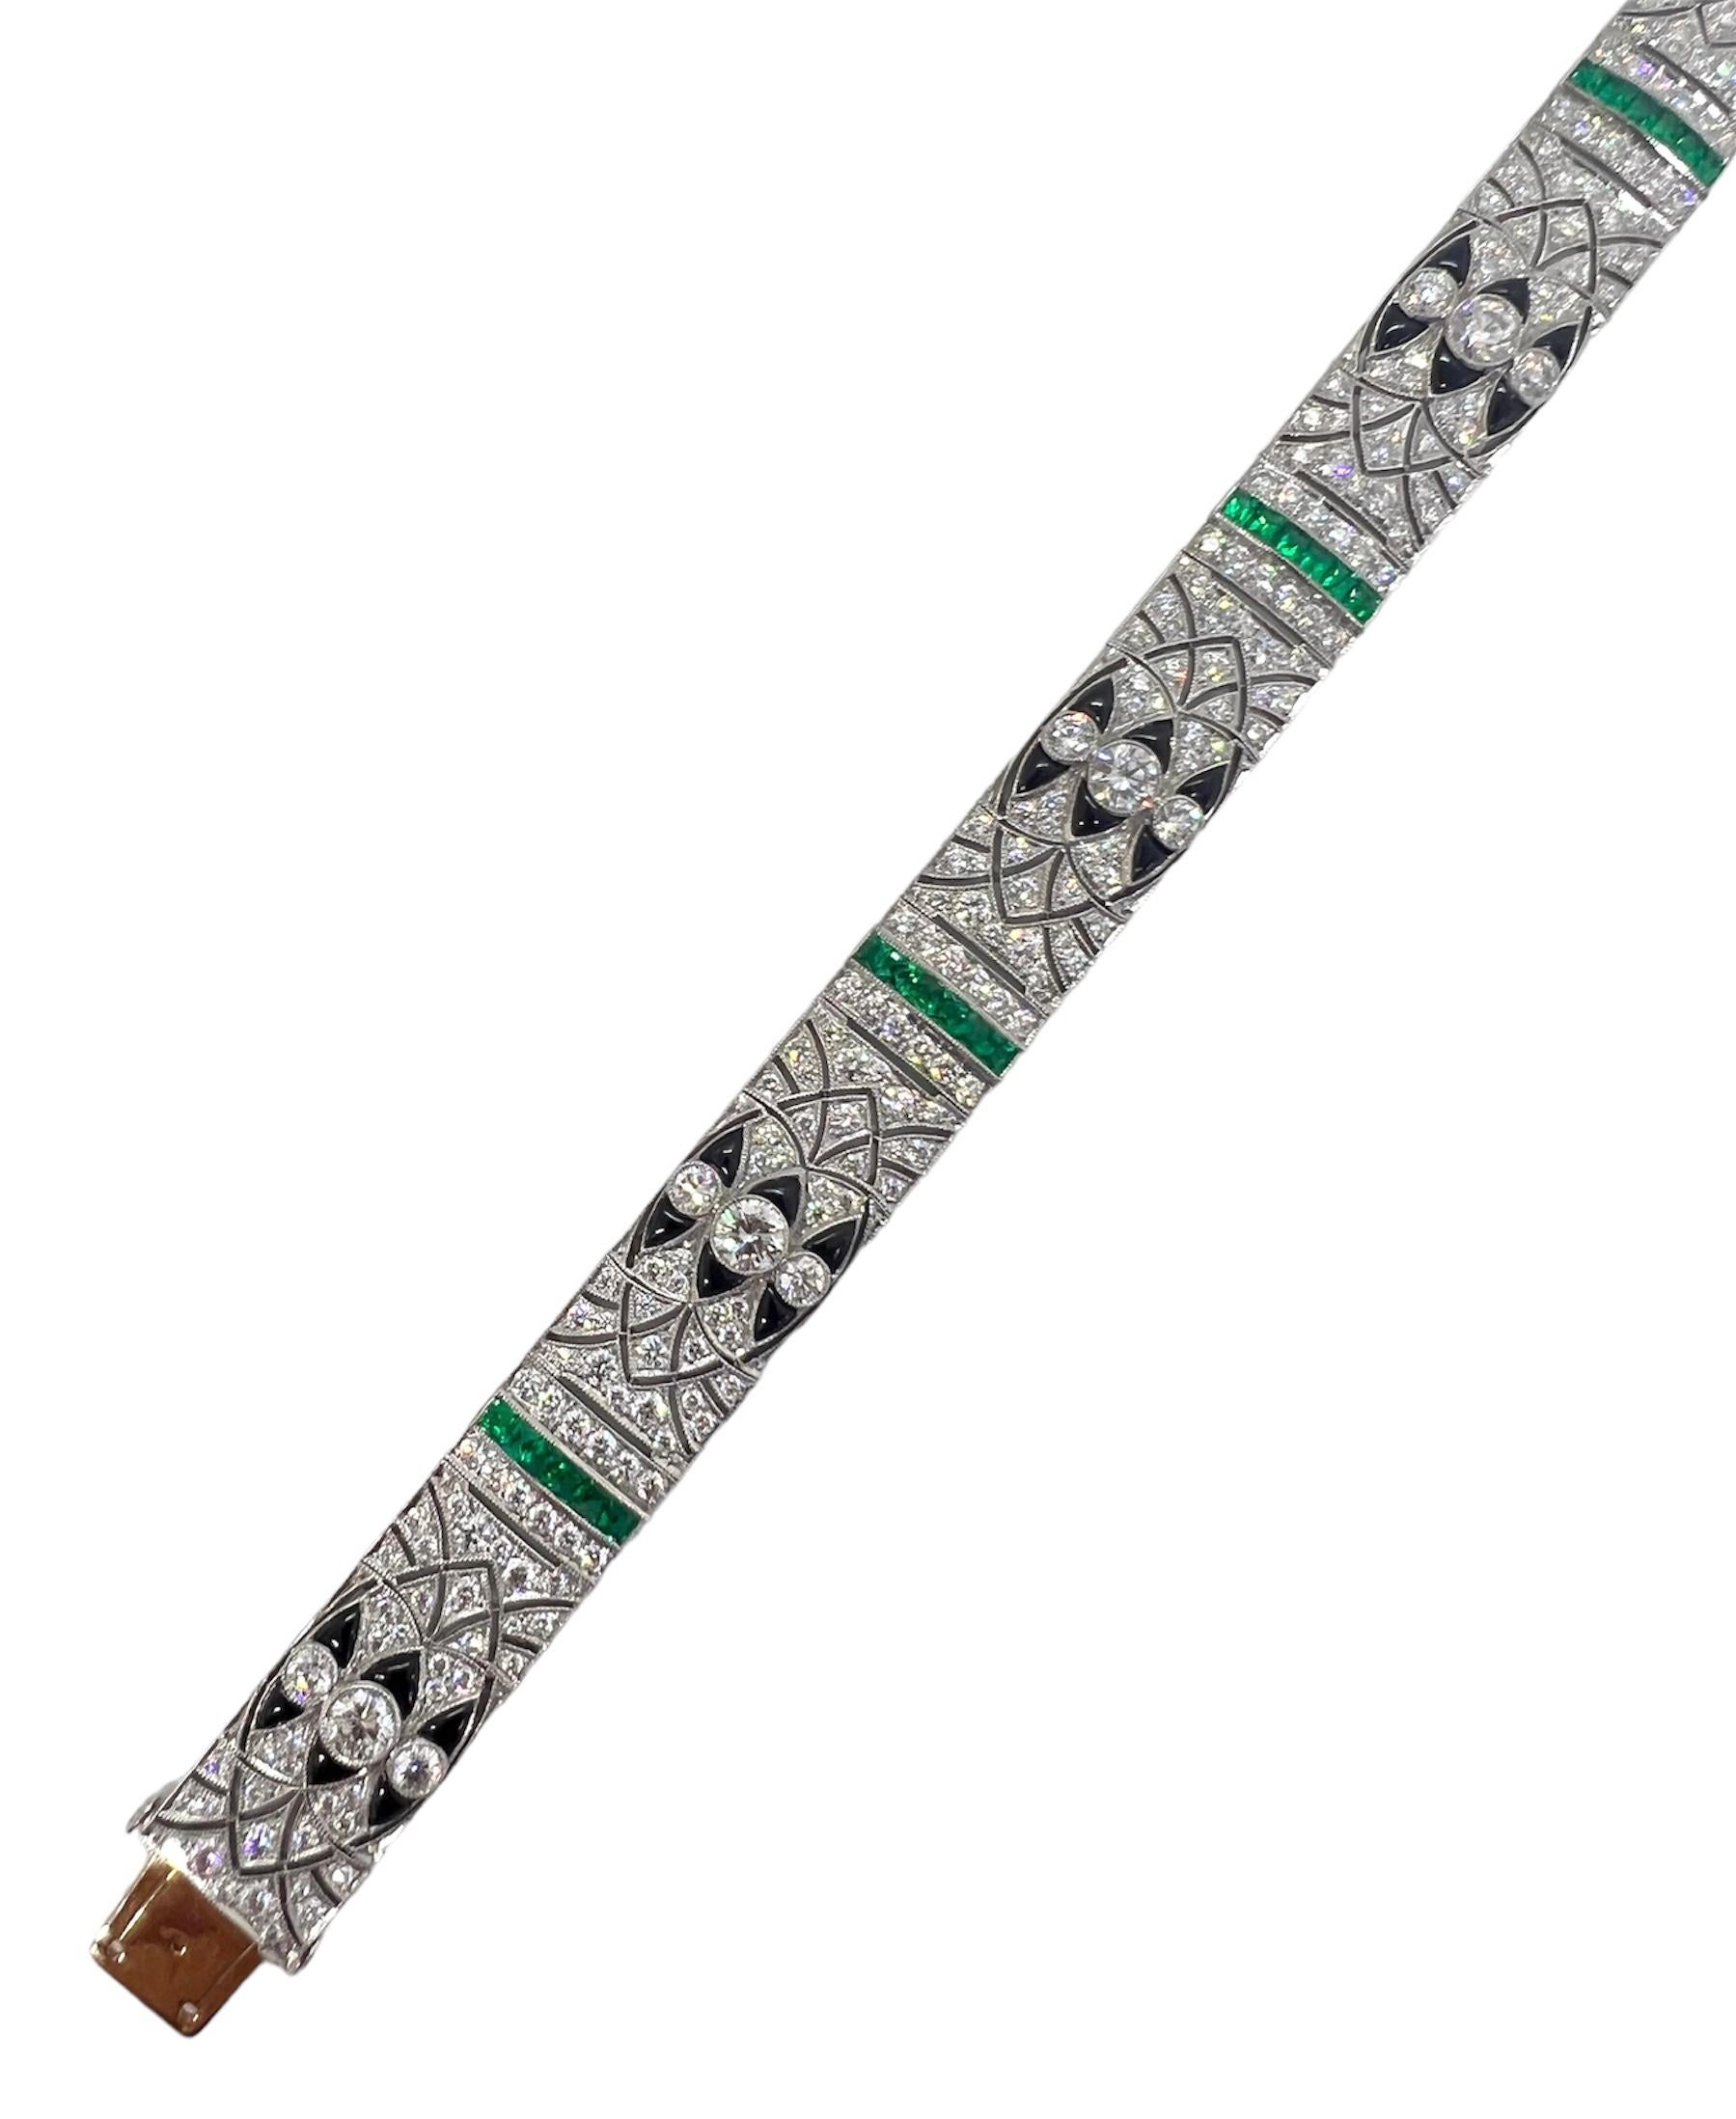 Art-Deco-Armband mit 4,39 Karat Diamant, 1,85 Karat Smaragd und Onyx in Platinfassung.

Sophia D von Joseph Dardashti LTD ist seit 35 Jahren weltweit bekannt und lässt sich vom klassischen Art-Déco-Design inspirieren, das mit modernen